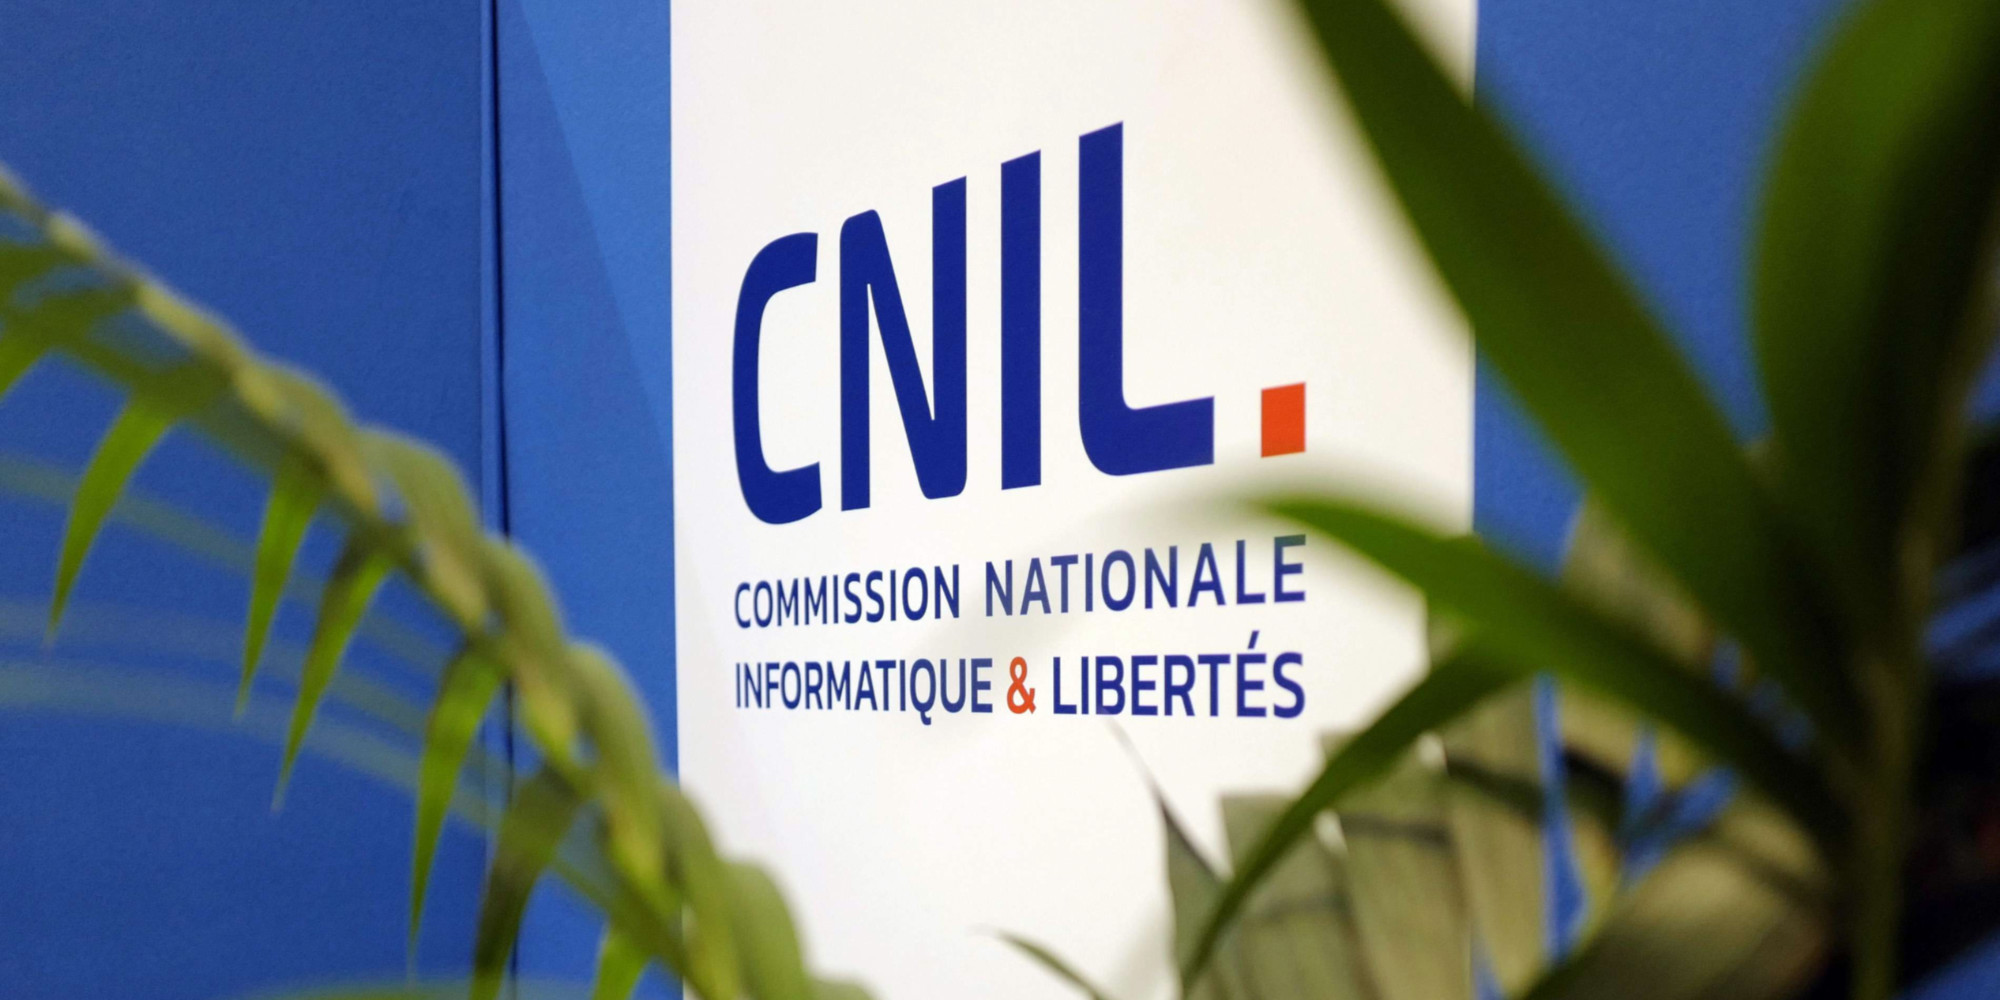 La Cnil entame un contrôle sur le niveau de cybersécurité des sites web français